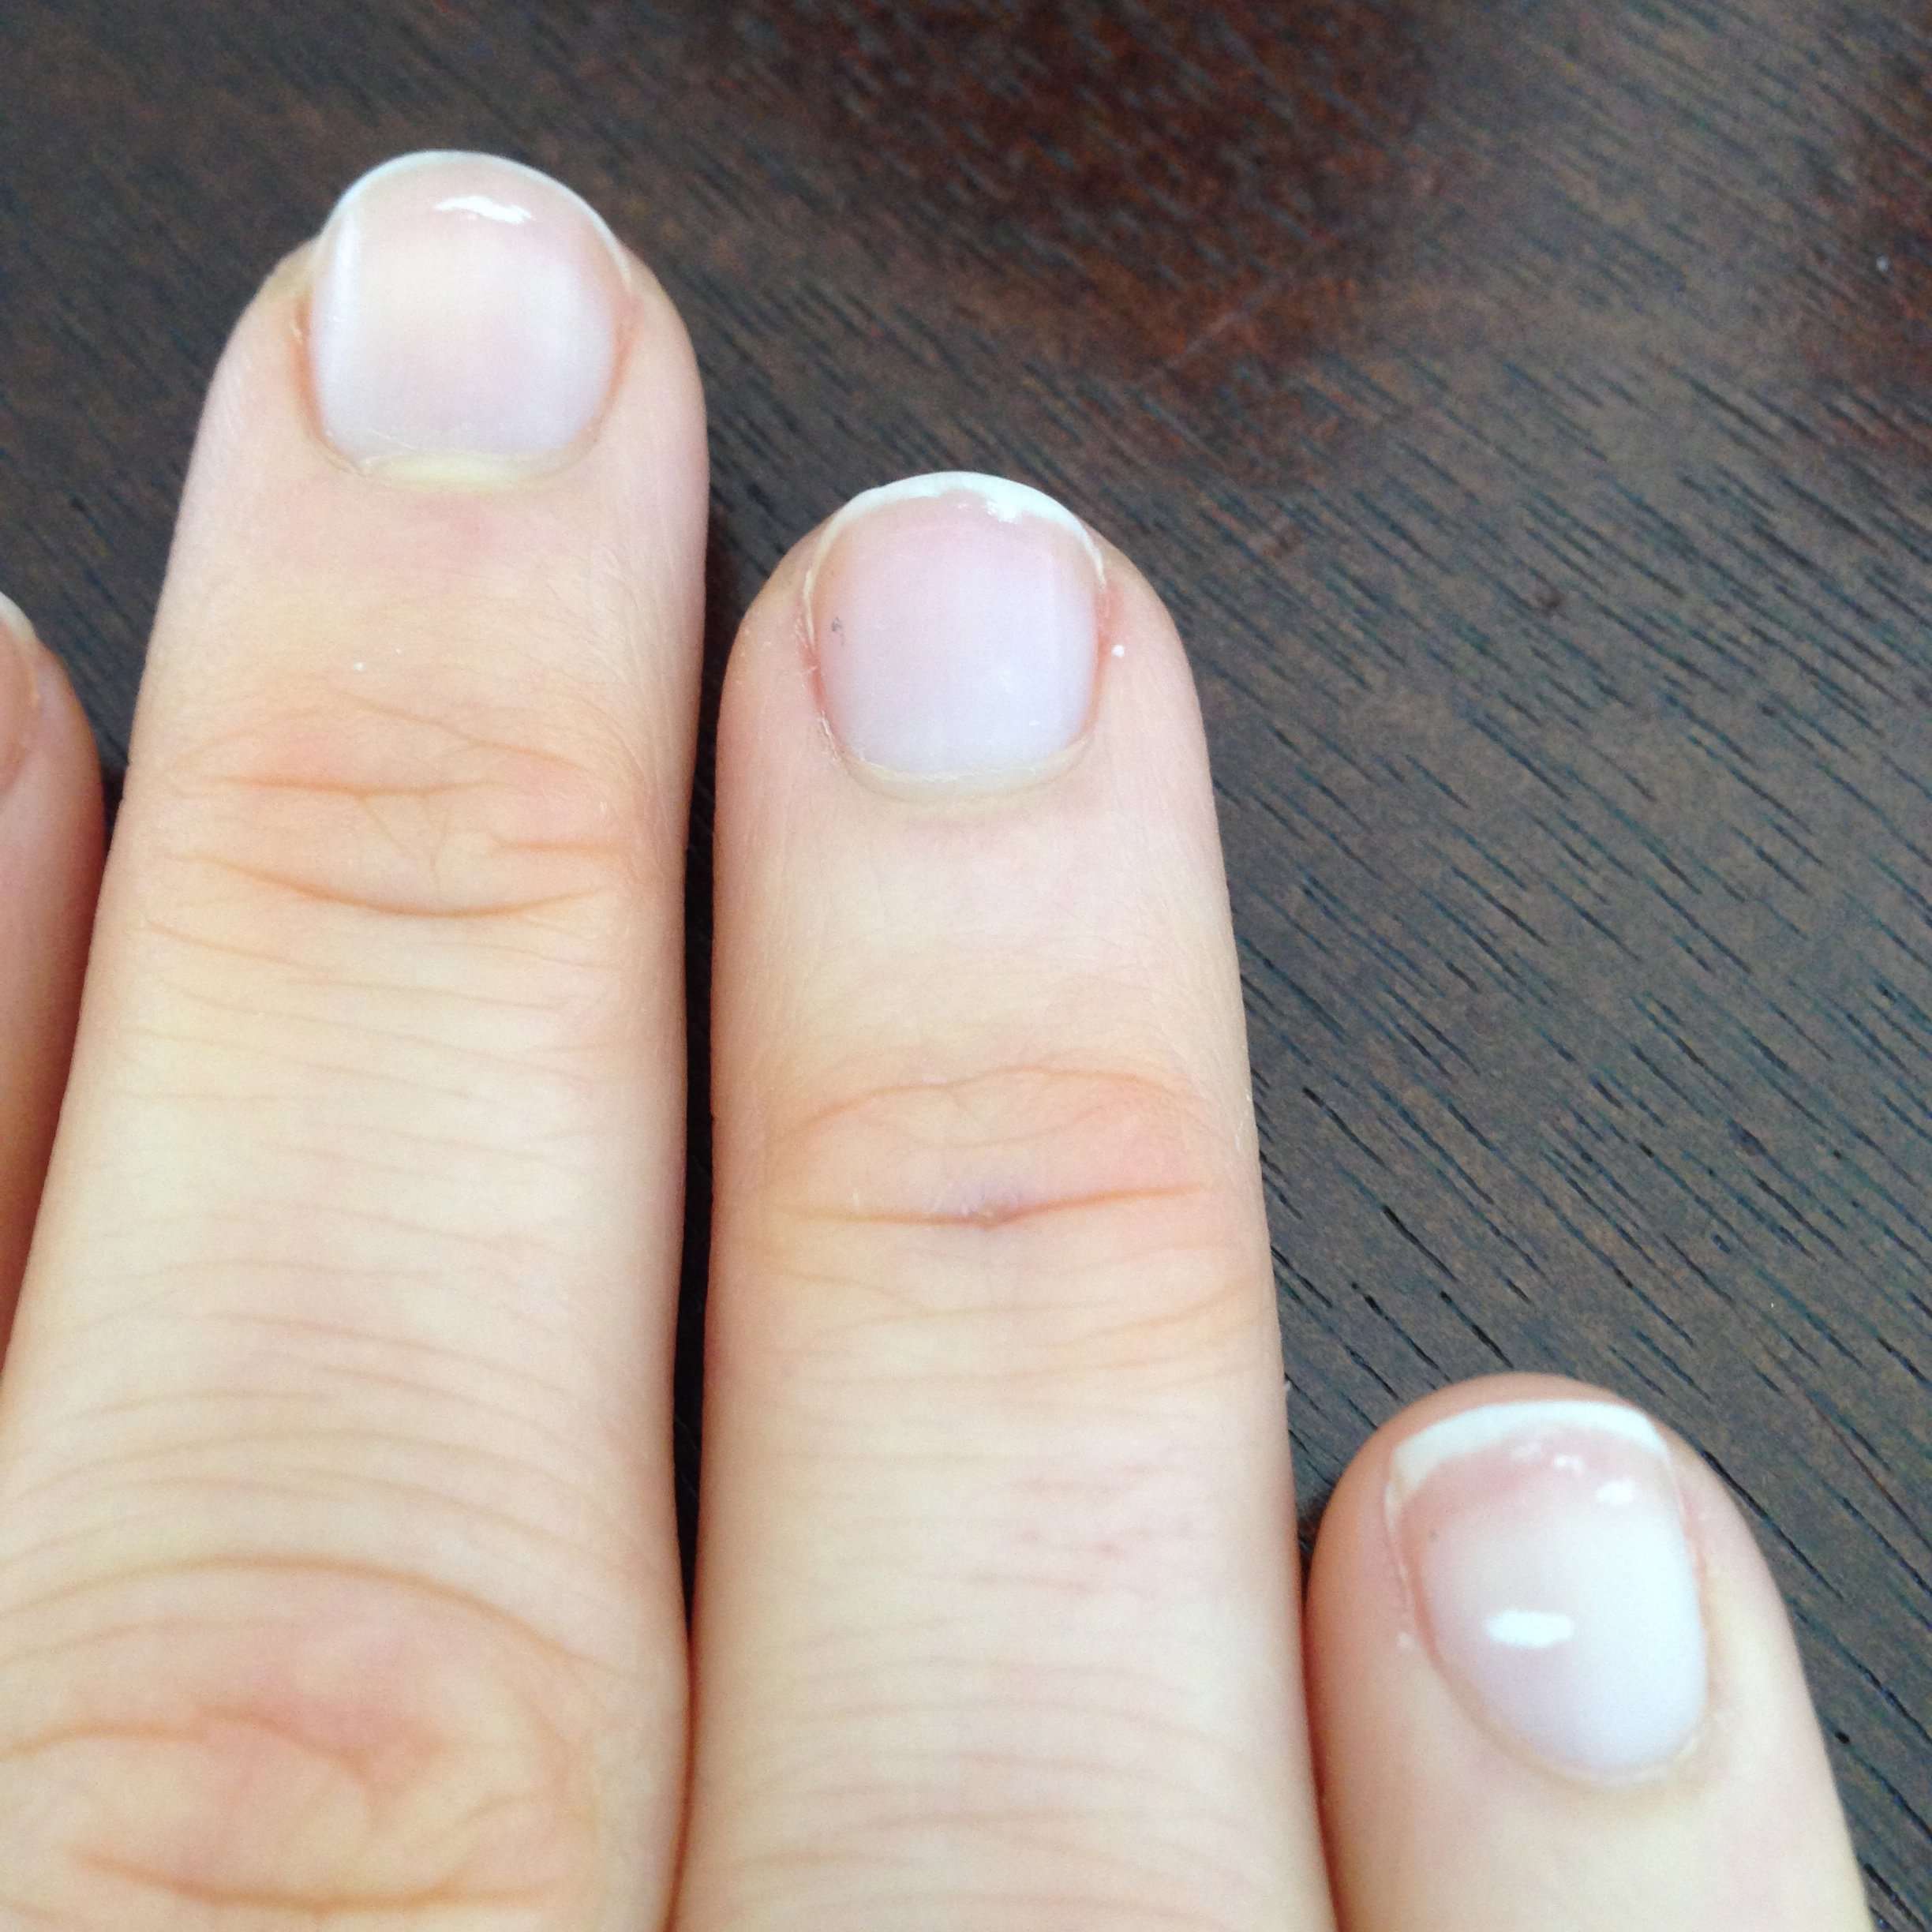 What do white spots on fingernails mean?